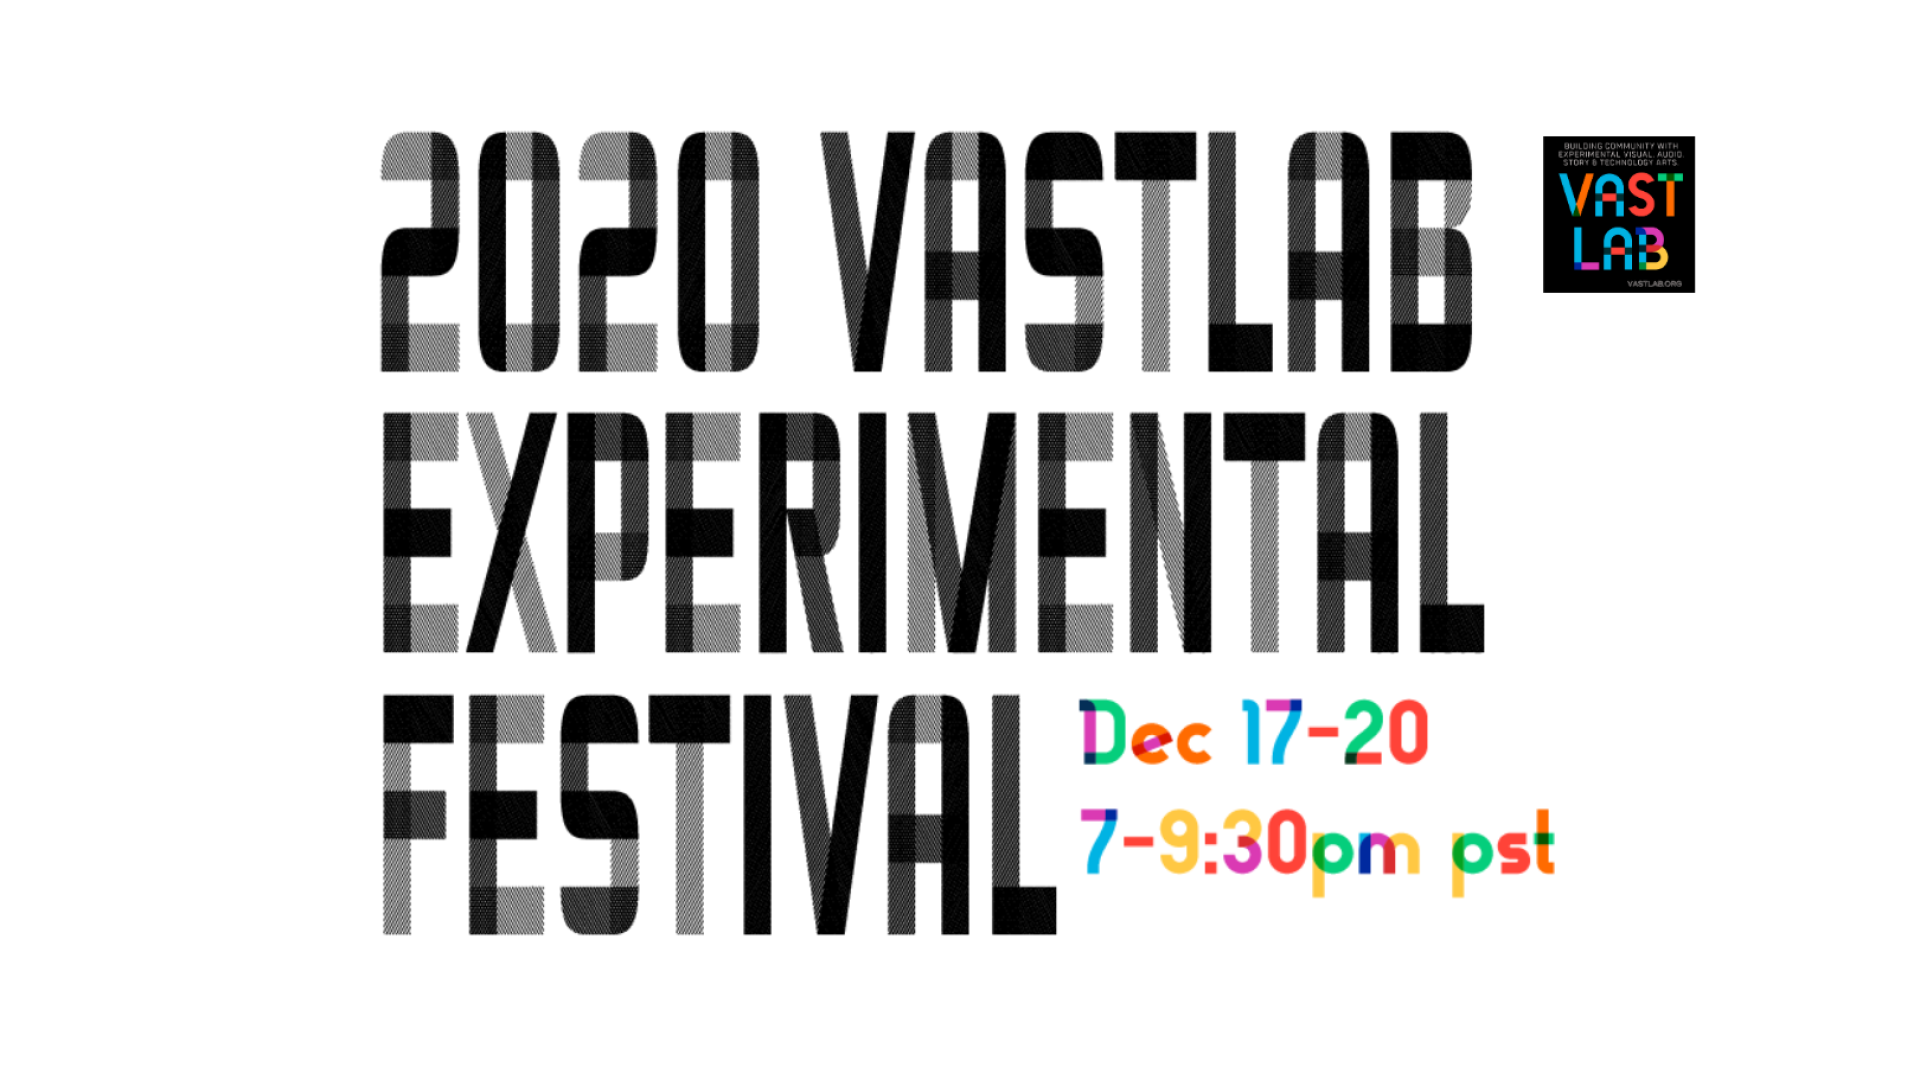 VASTLAB_Event2020_Dec